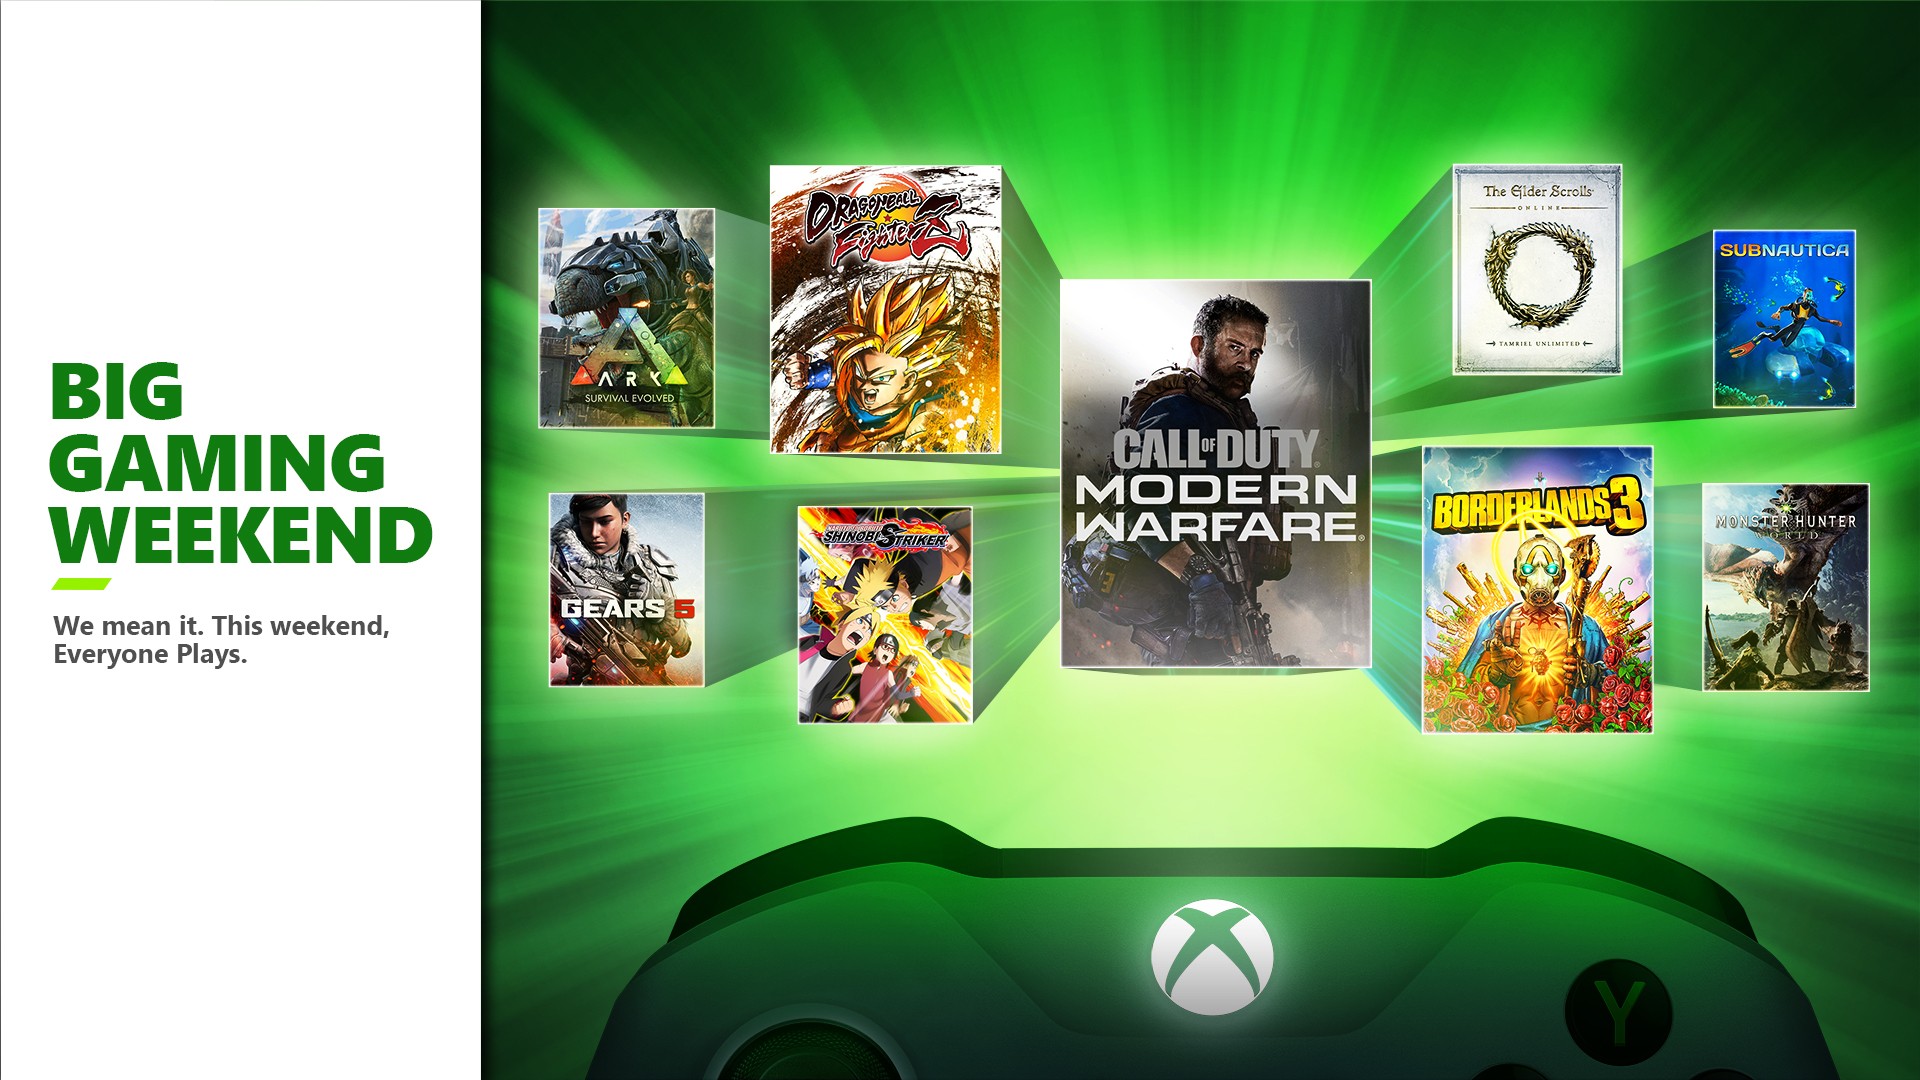 TOP 10 Jogos Multiplayer + Jogados do Xbox, 10 Coisas sobre Xbox